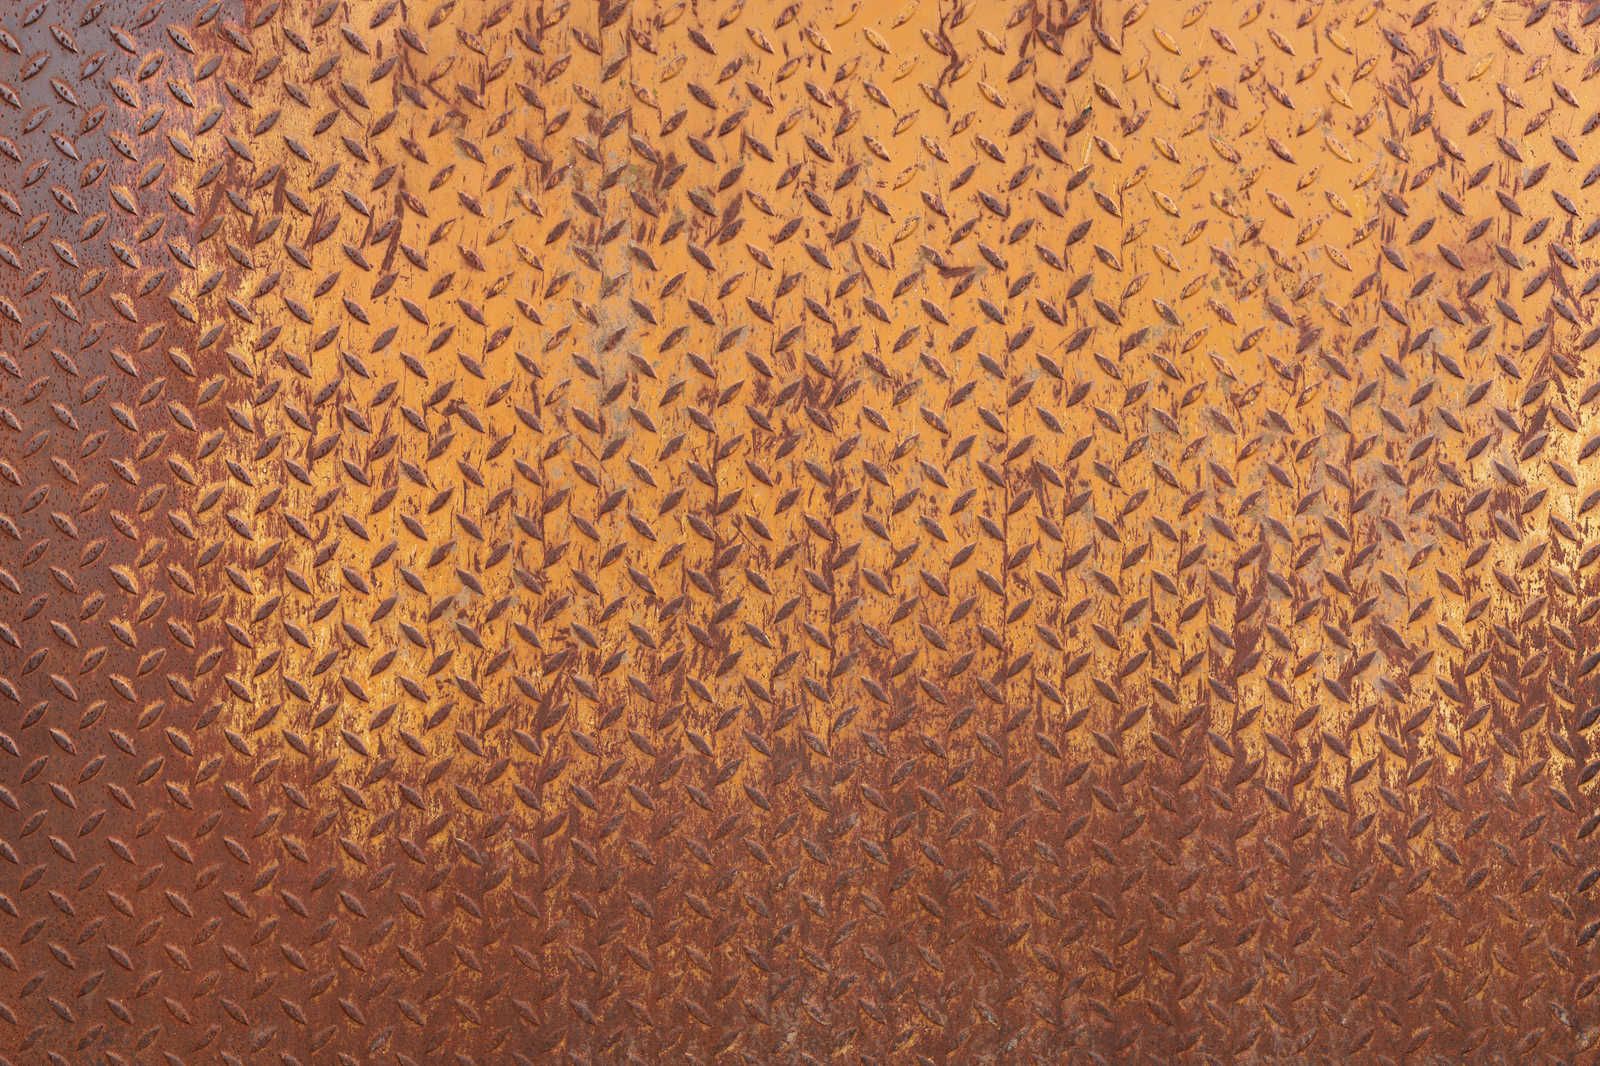             Lienzo metálico Pintura Placa de acero óxido con dibujo de diamantes - 0,90 m x 0,60 m
        